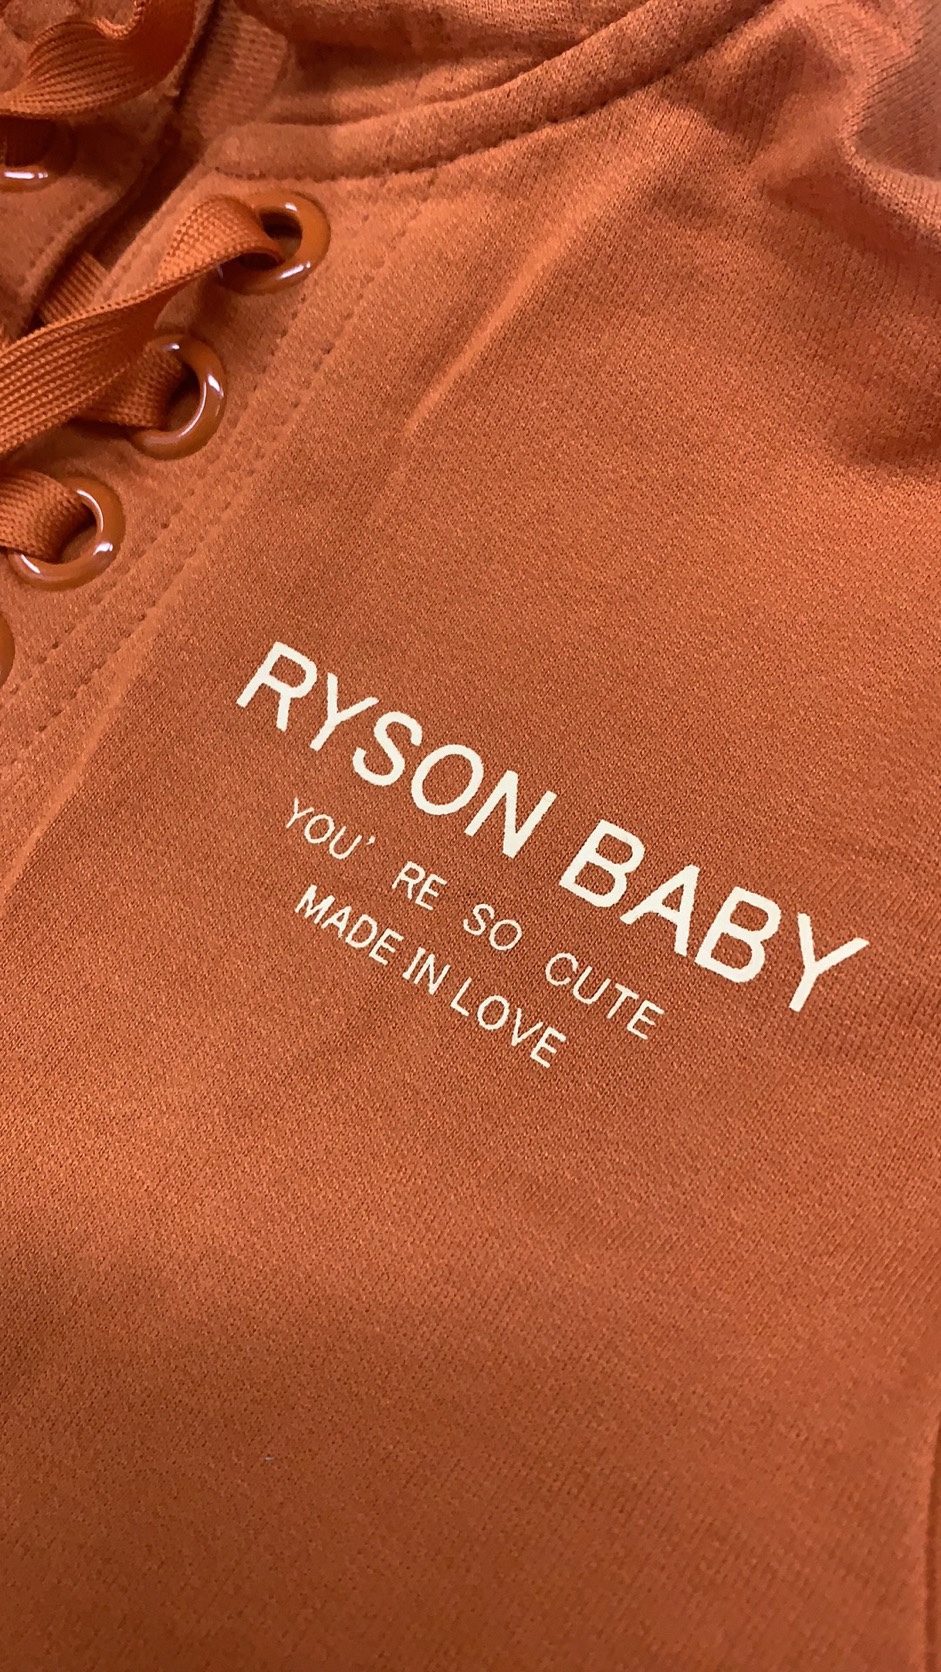 RYSON母婴用品生产厂家